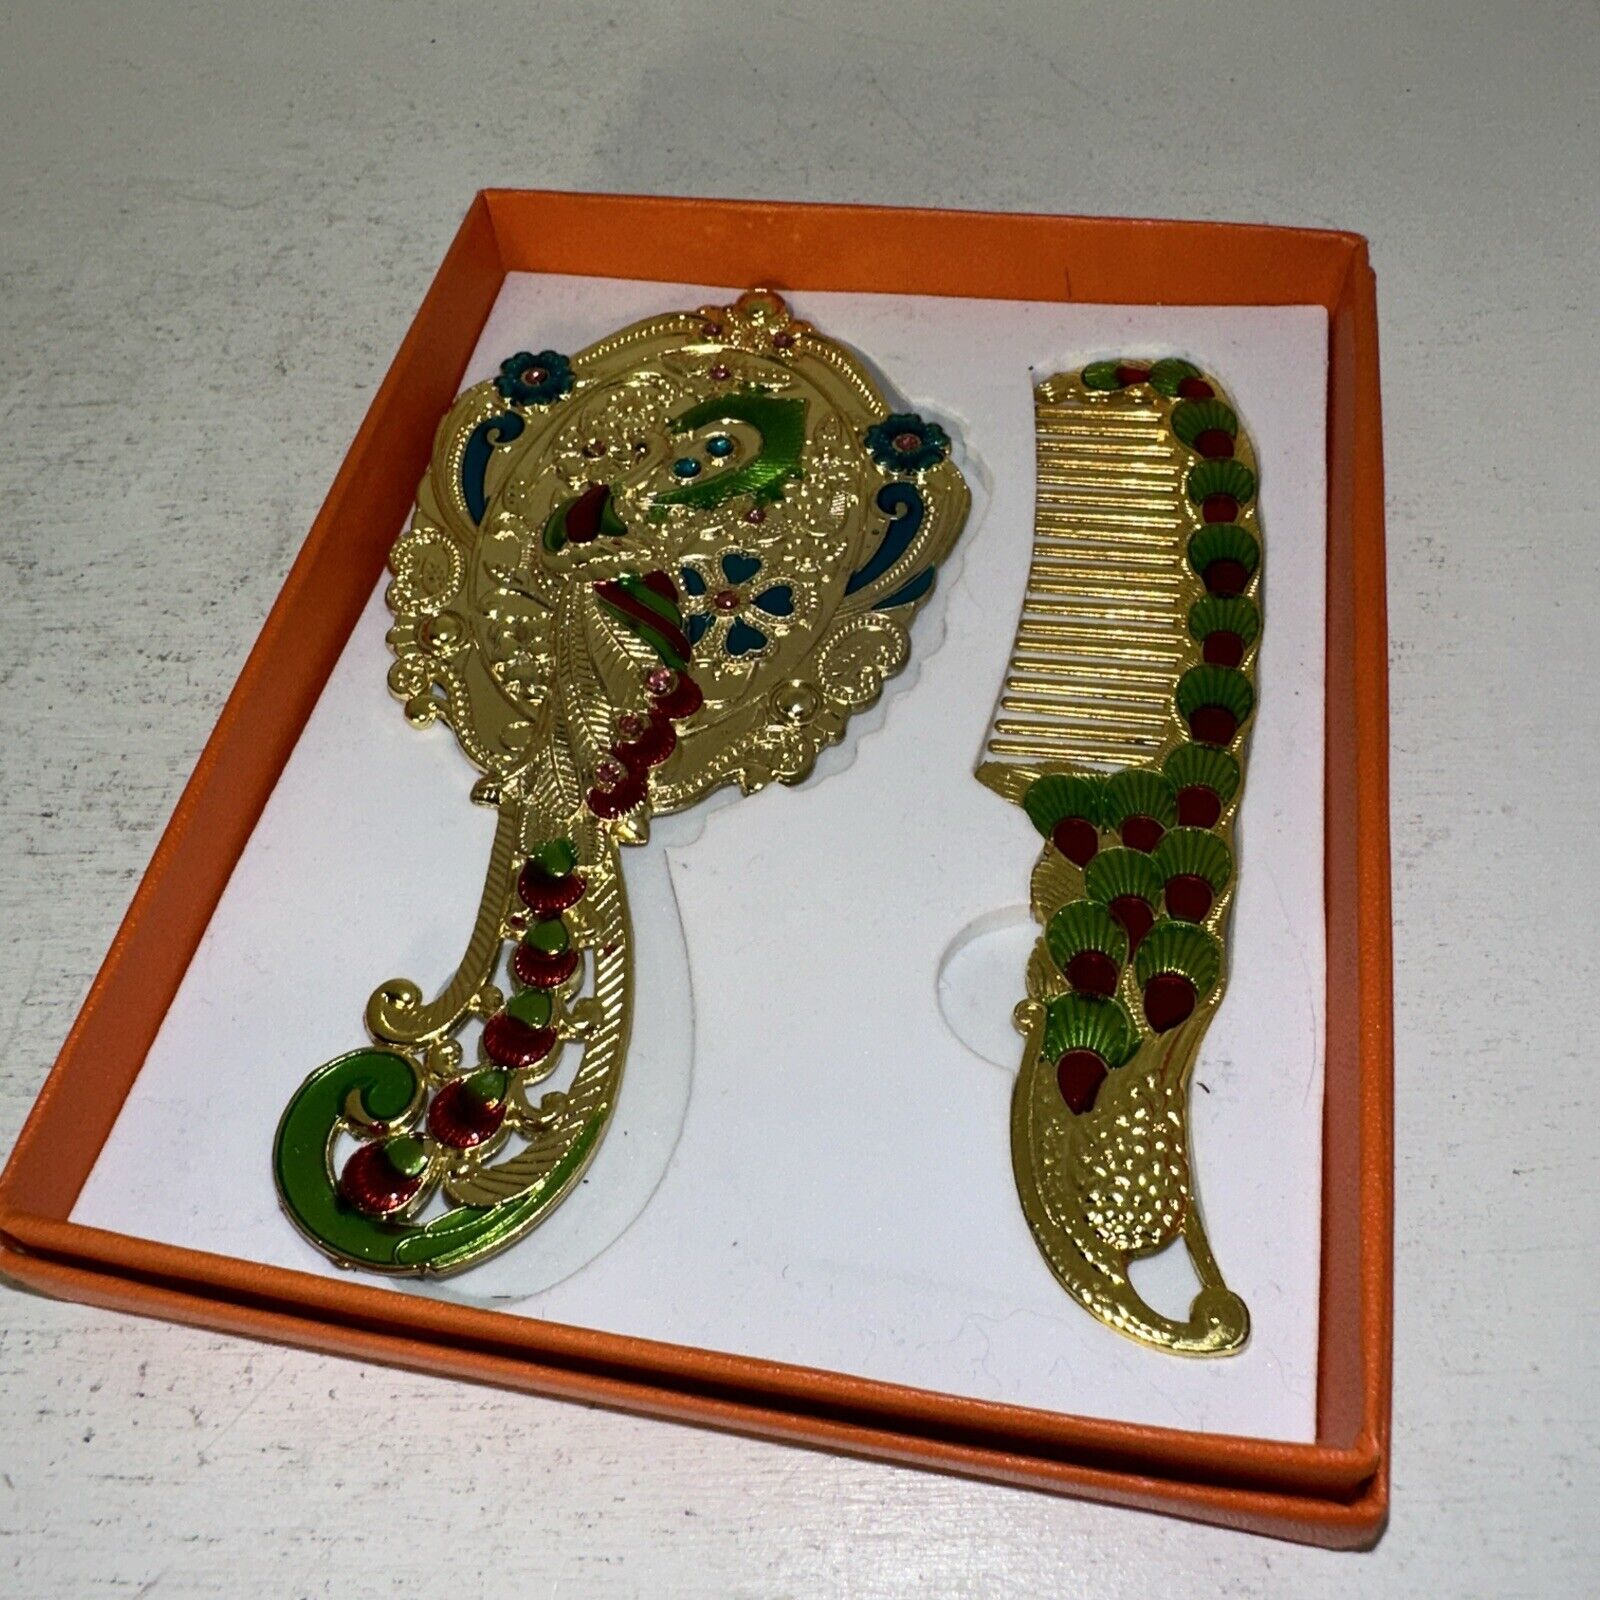 Vintage Maniya Peacock Mirror and Comb Set In Orginal Box.